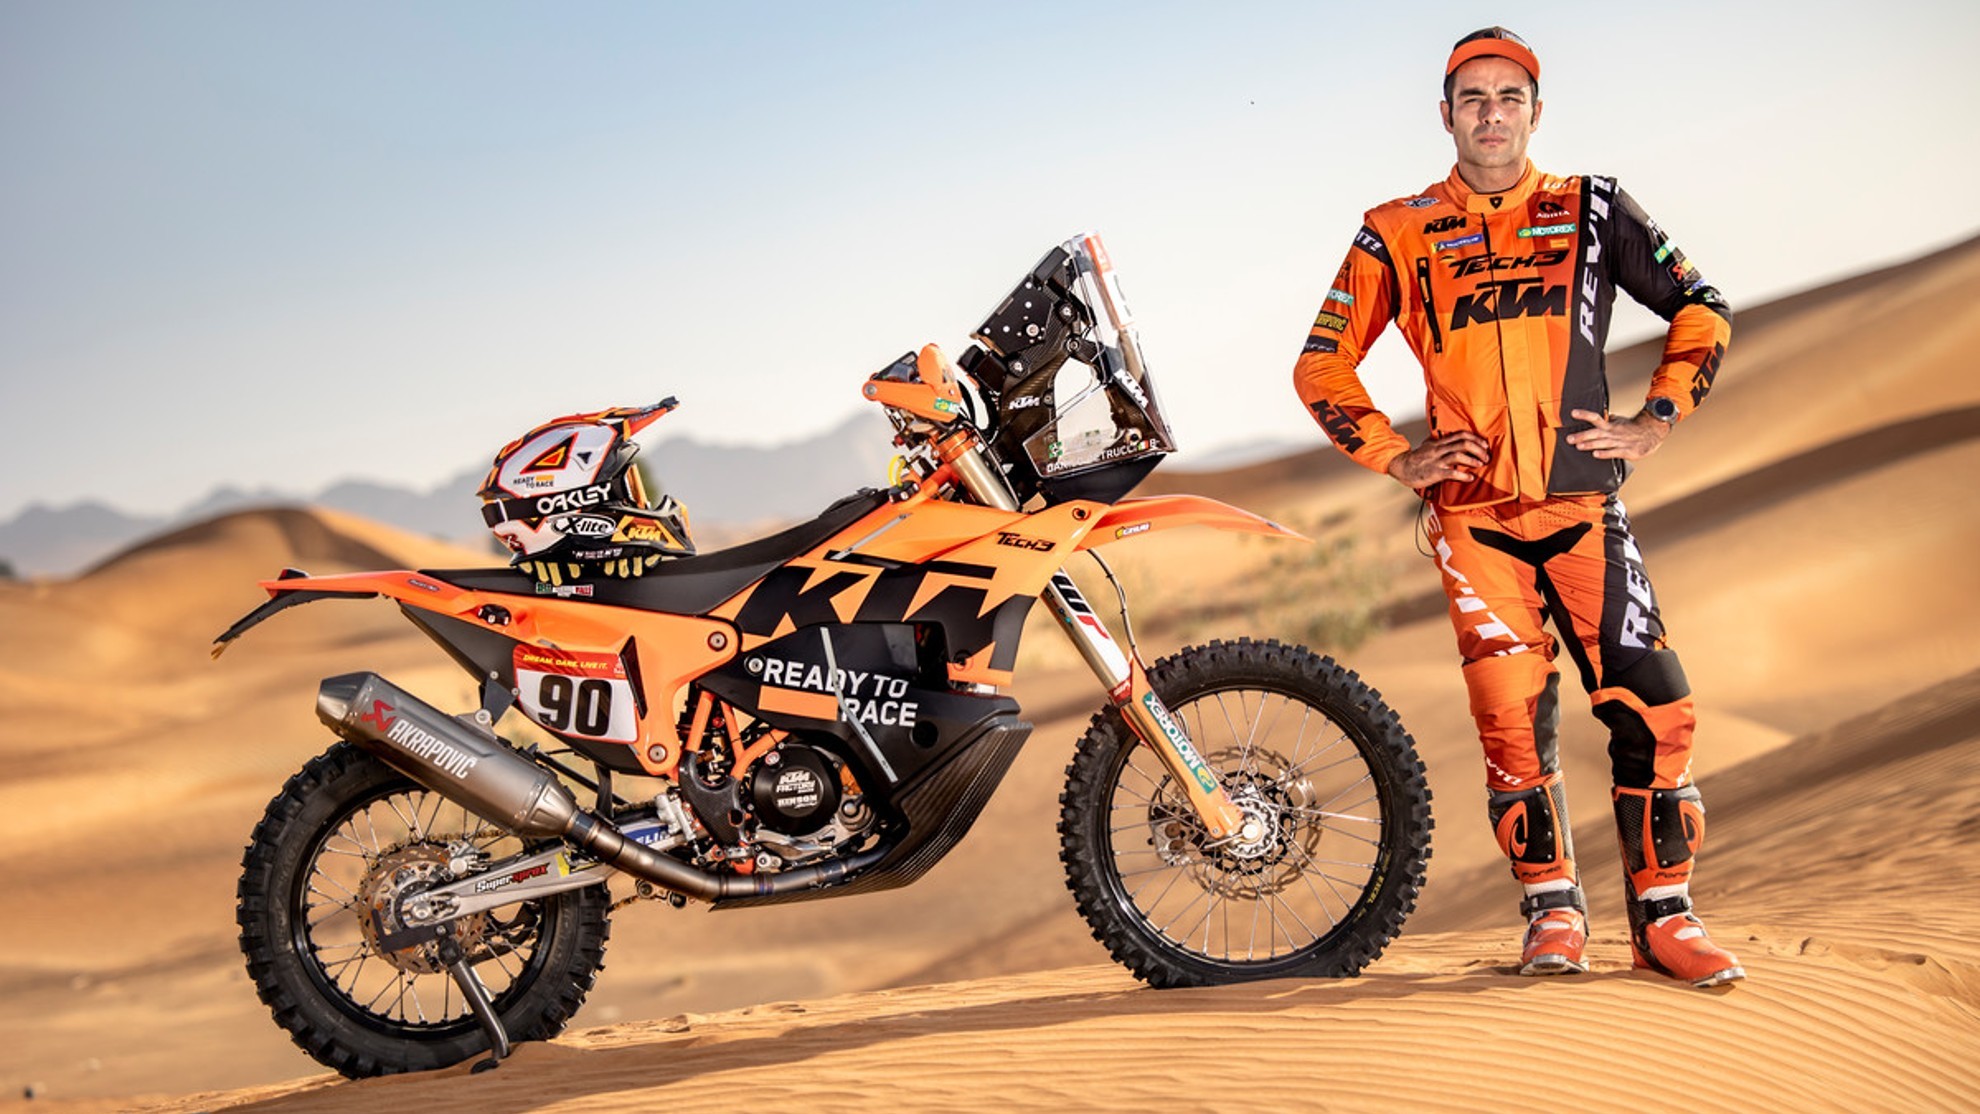 Danilo Petrucci - Dakar 2022 - KTM - caida - fractura maleolo perineal - tobillo - Dubai - lesion